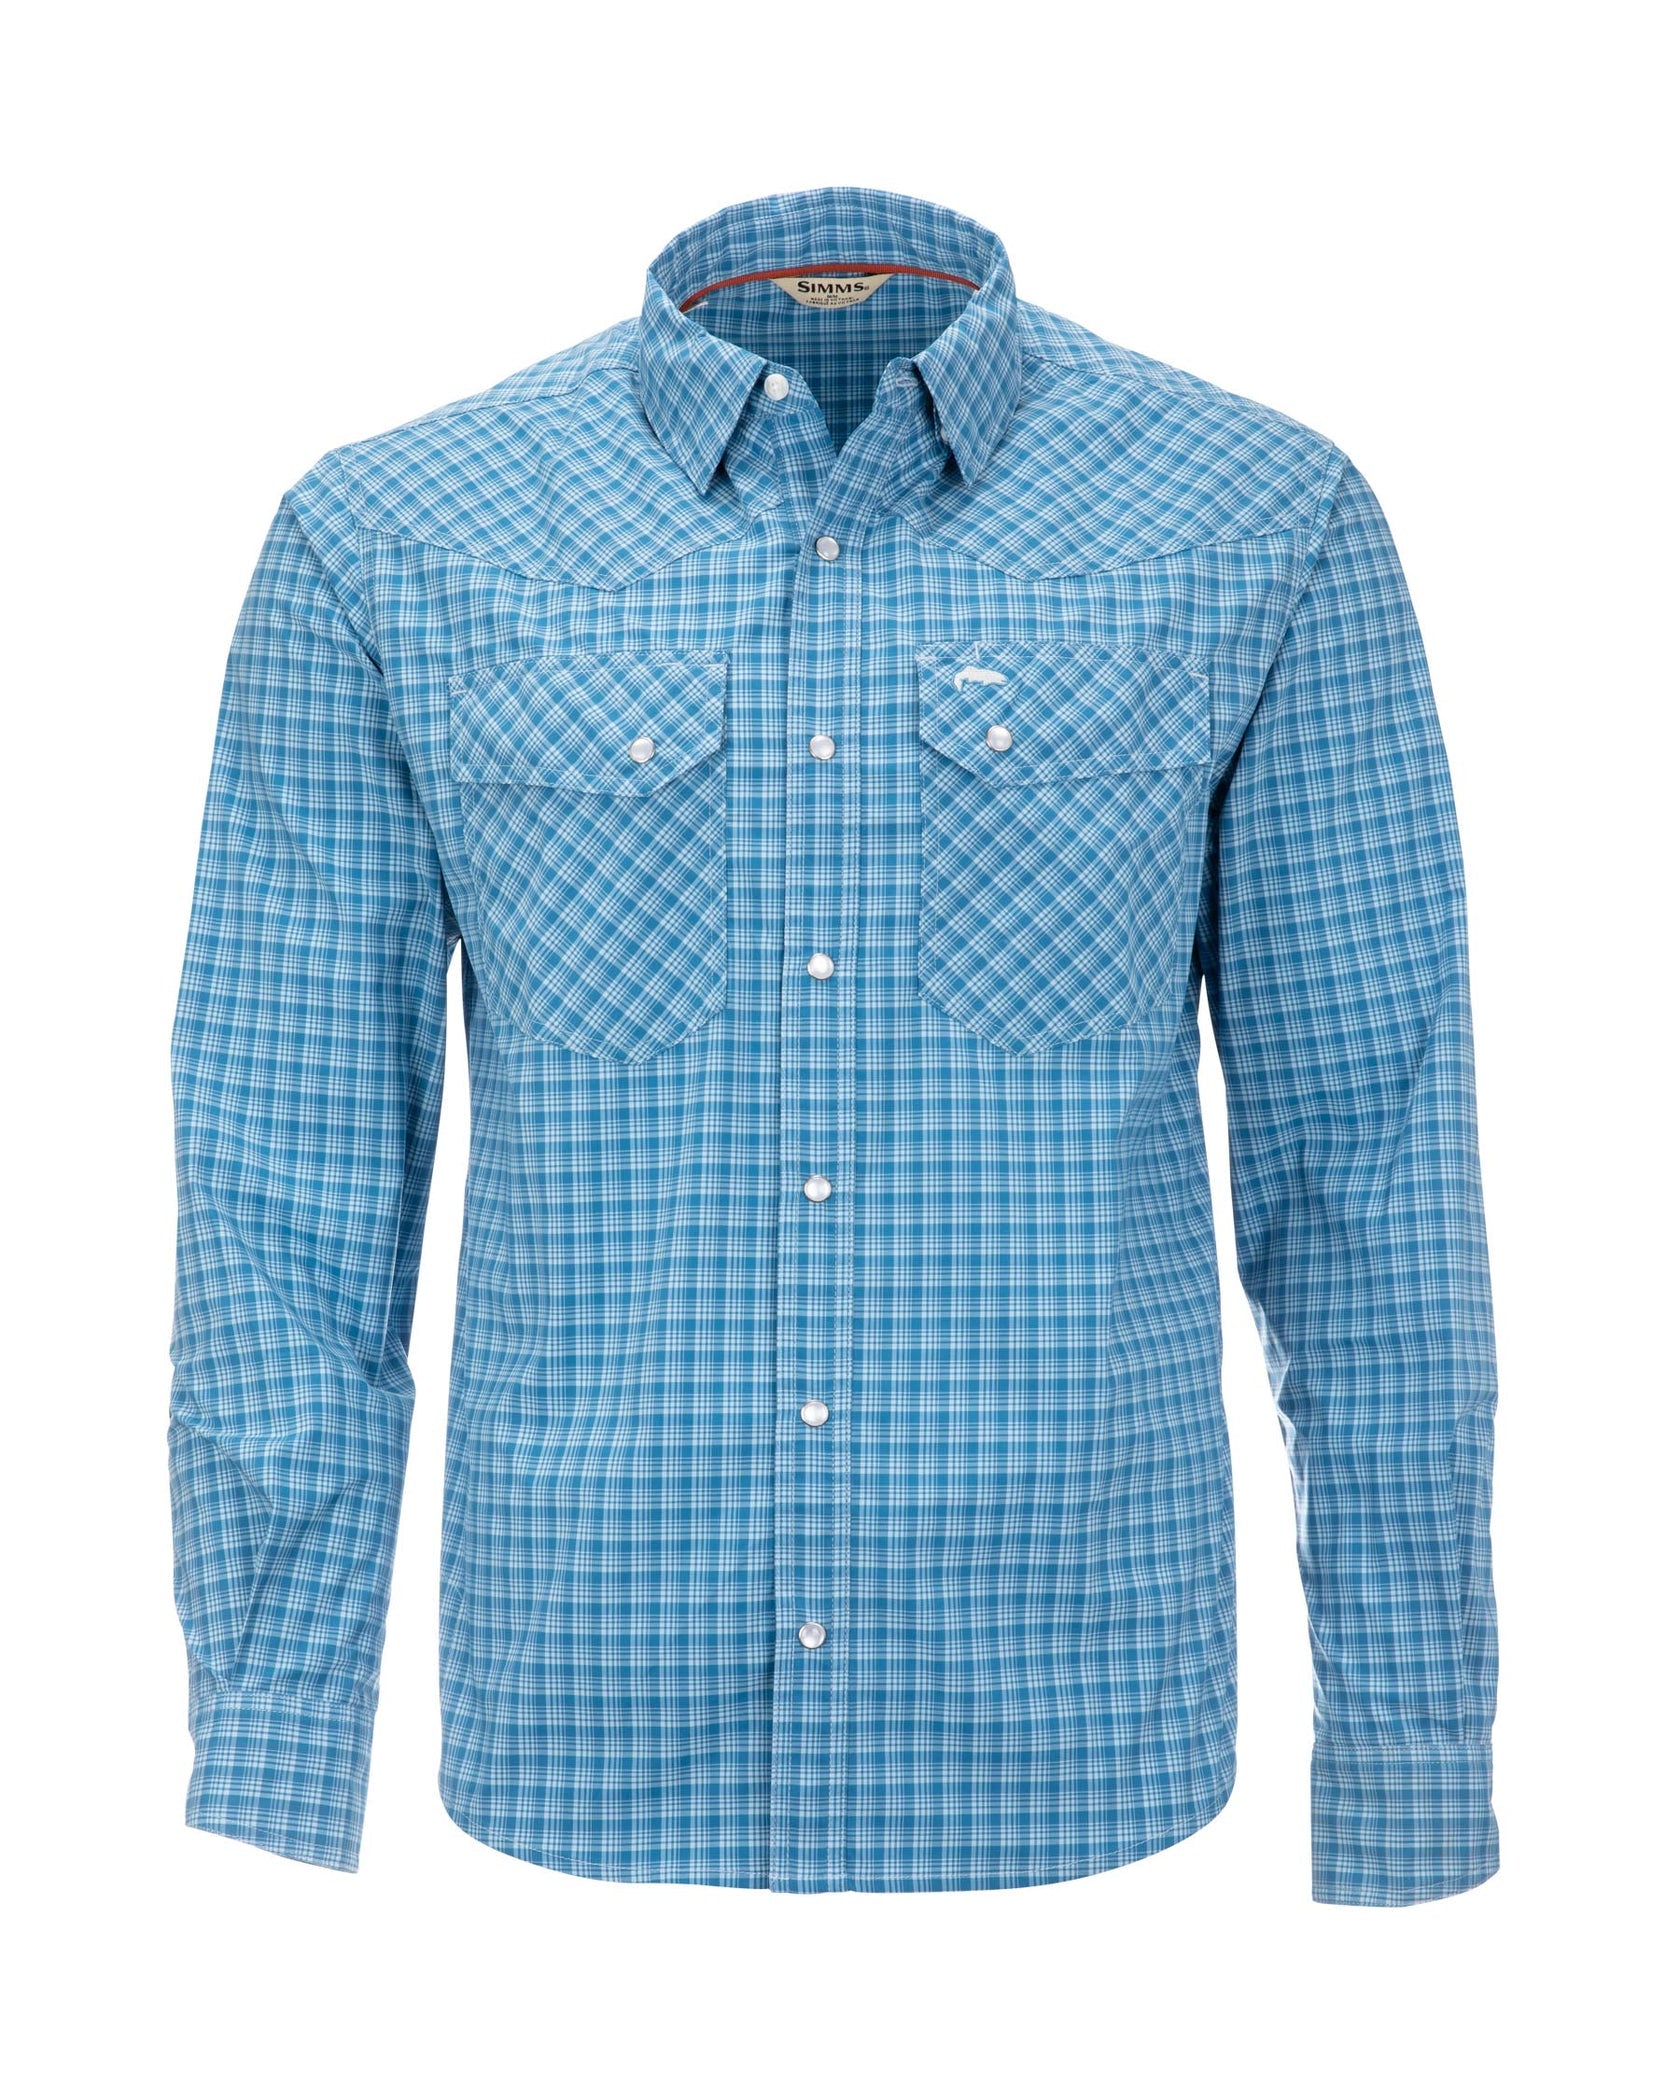 Simms Double Haul Fishing Short-Sleeve Button-Down Shirt for Men